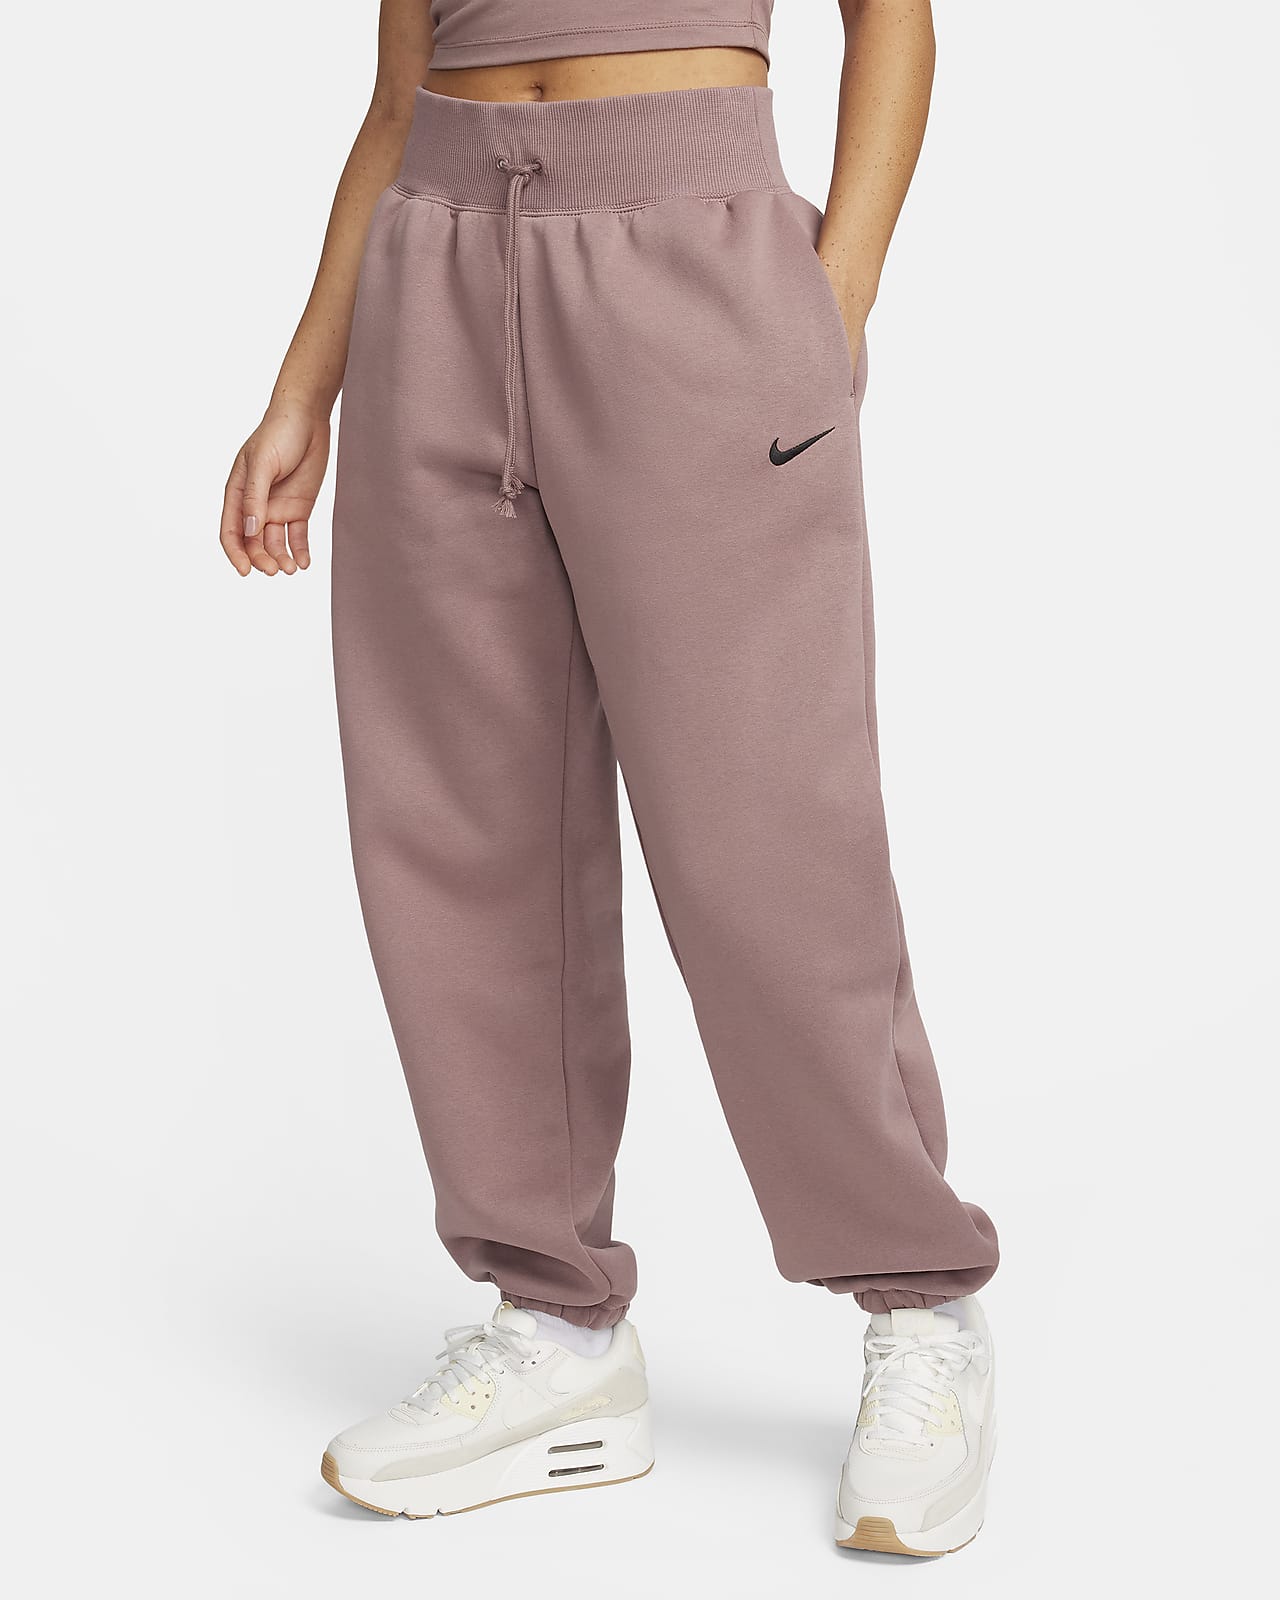 Nike Sportswear Phoenix Fleece magas derekú, túlméretezett női melegítőnadrág